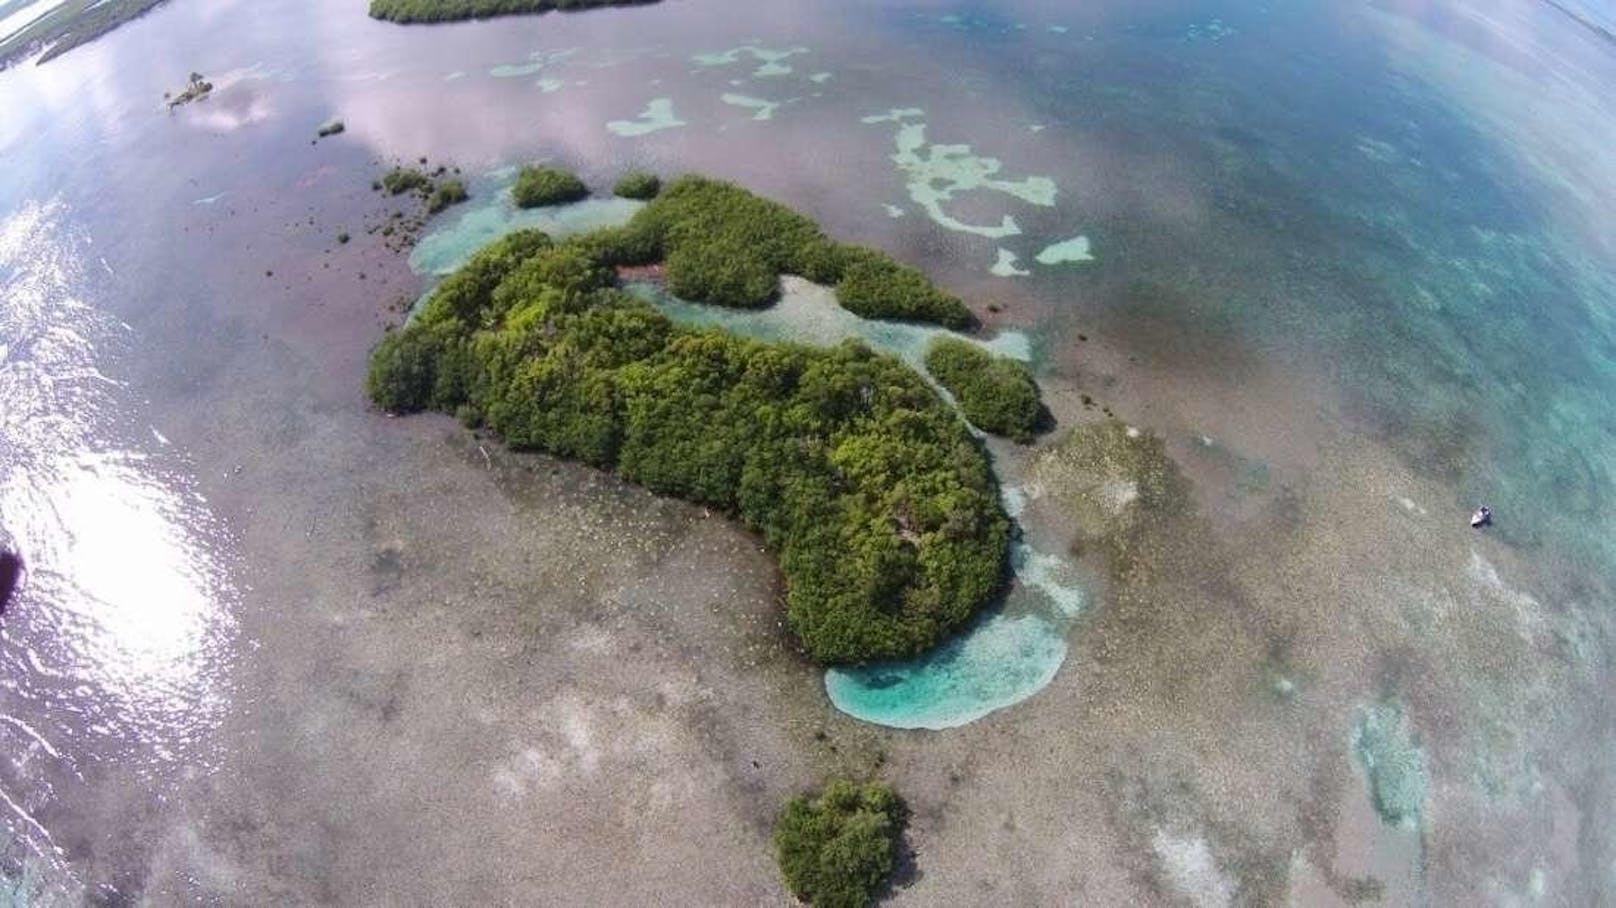 <b>Frigate Caye, Belize</b>
Mit nur gerade etwas mehr als 5000 Quadratmetenr ist diese Insel in Belize vergleichsweise klein ? und ebenfalls noch unerschlossen.